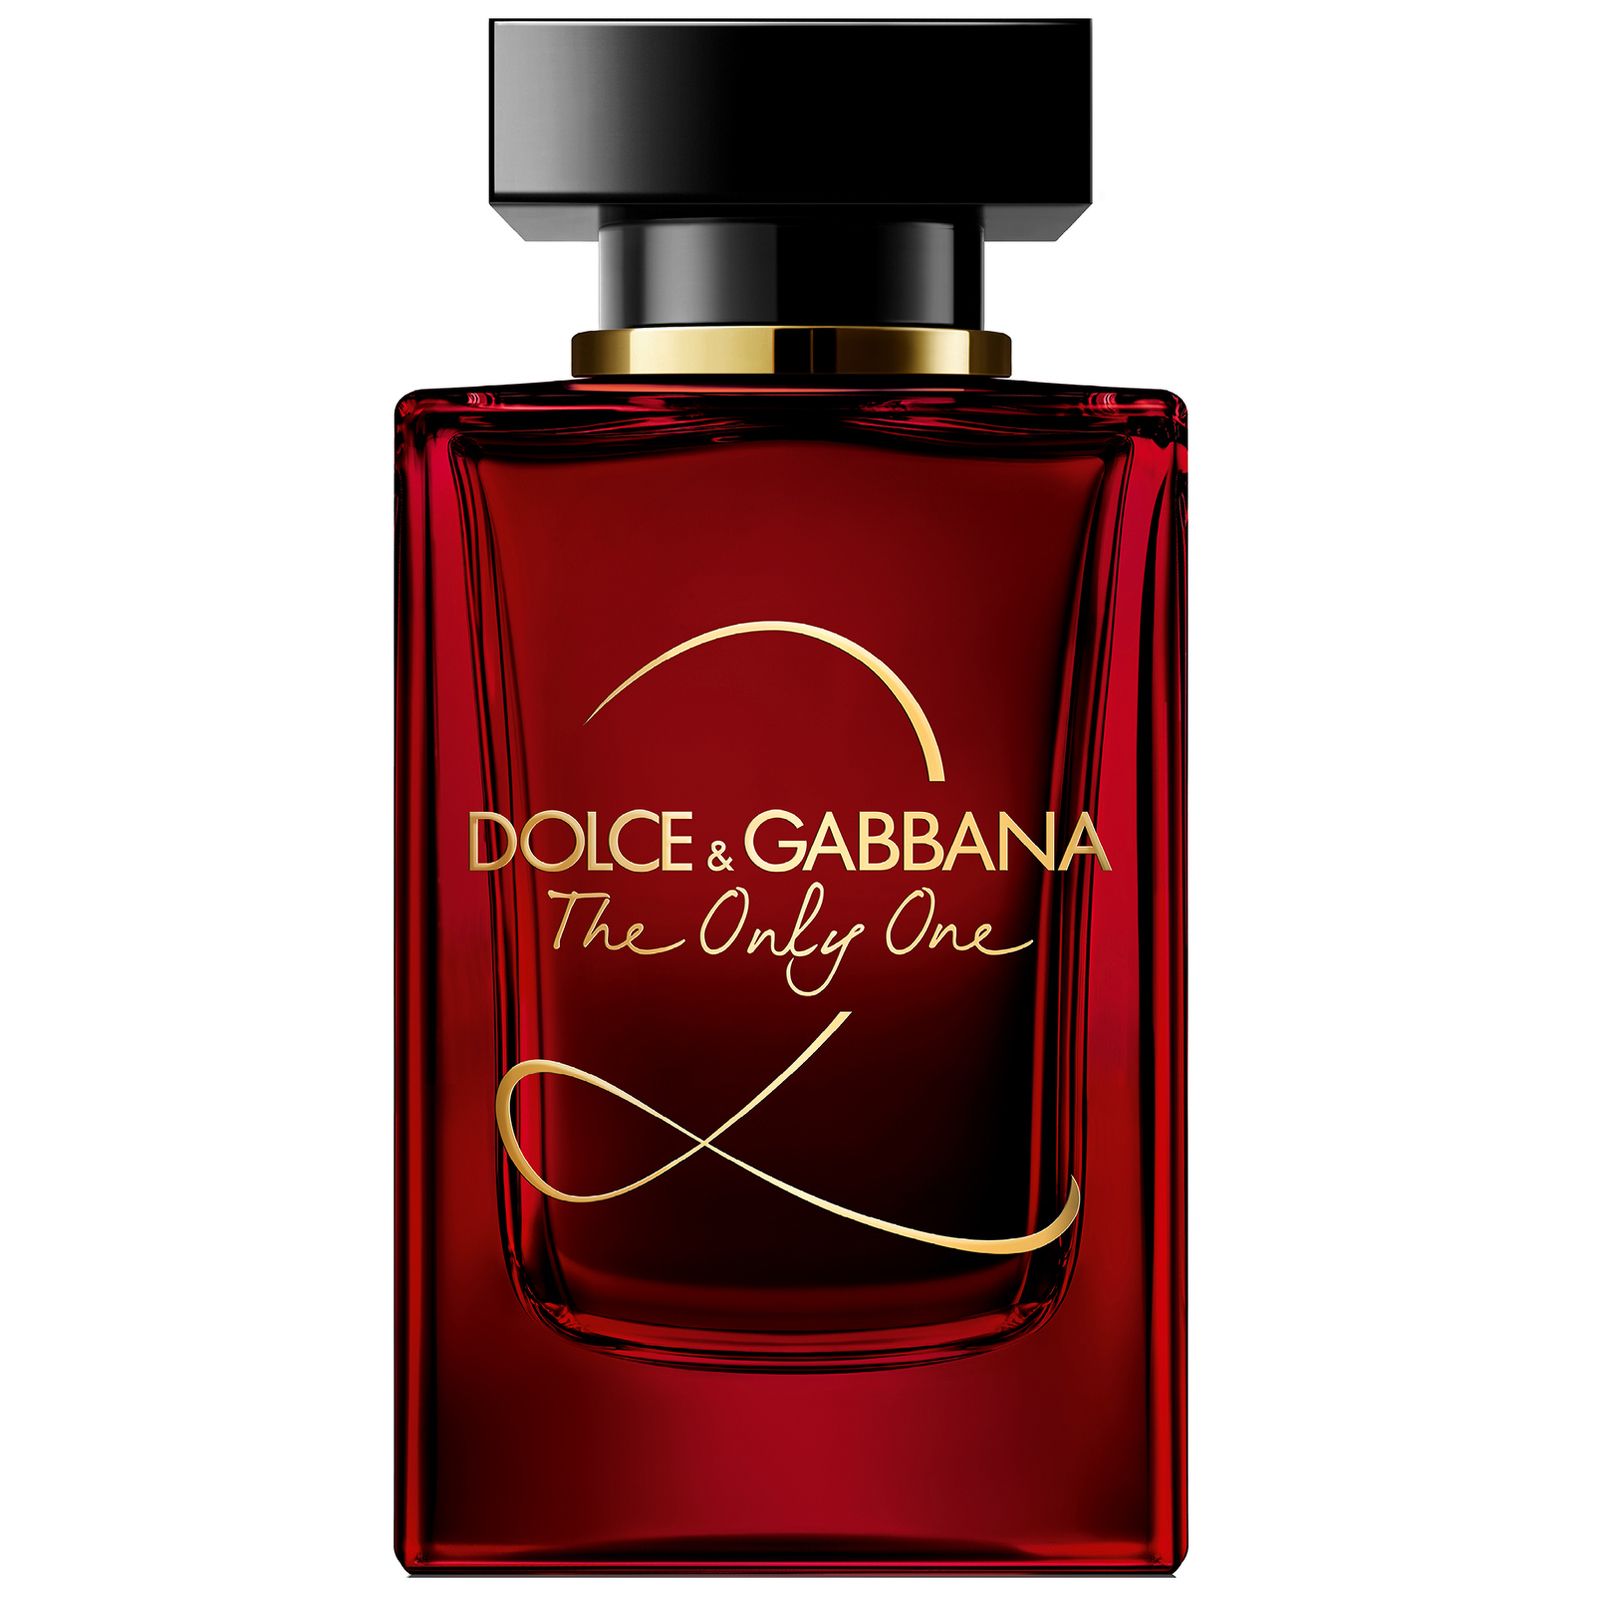 Дольче габбана парфюм летуаль. Dolce Gabbana the only one 2 100 мл. Dolce& Gabbana the only one 2 EDP, 100 ml. Dolce Gabbana the only one 2 30 мл. Dolce & Gabbana the only one, EDP., 100 ml.